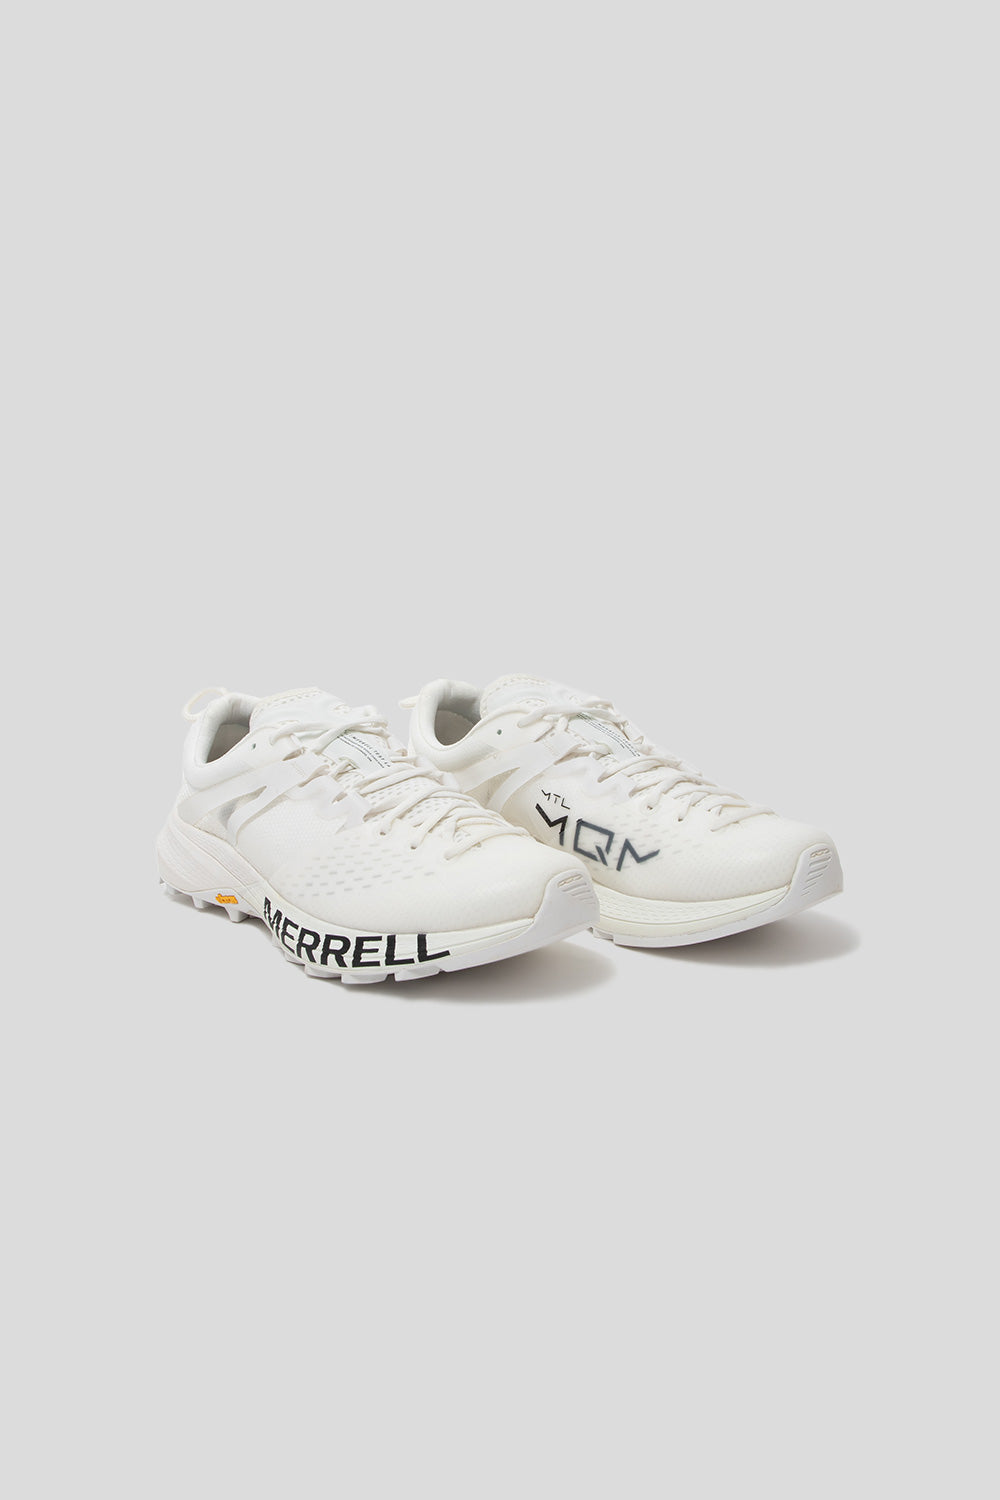 Merrell 1TRL MTL MQM Shoe in White